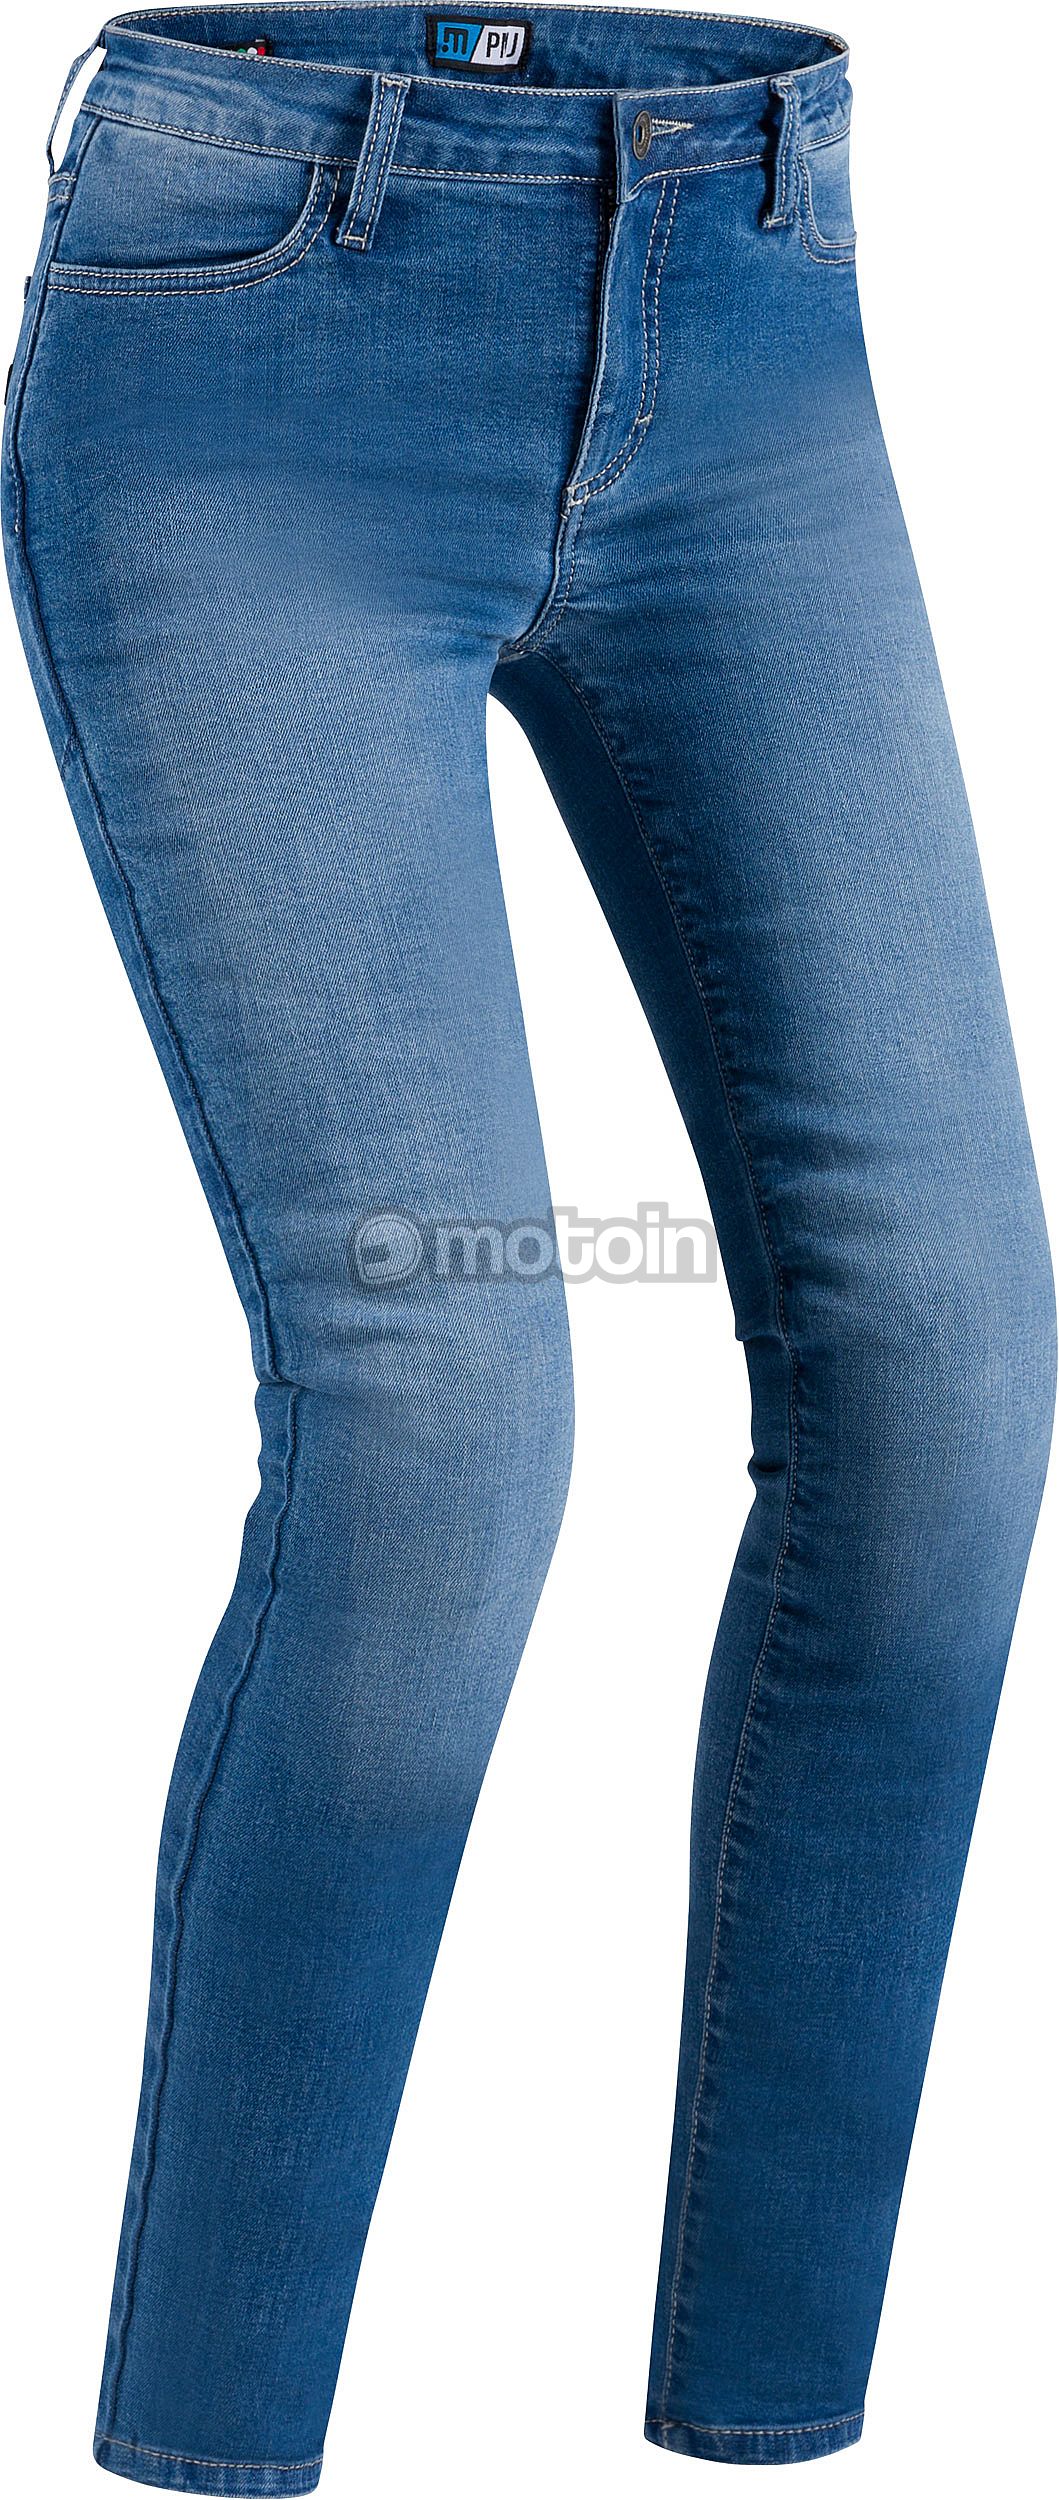 PMJ Skinny, jeans kvinder